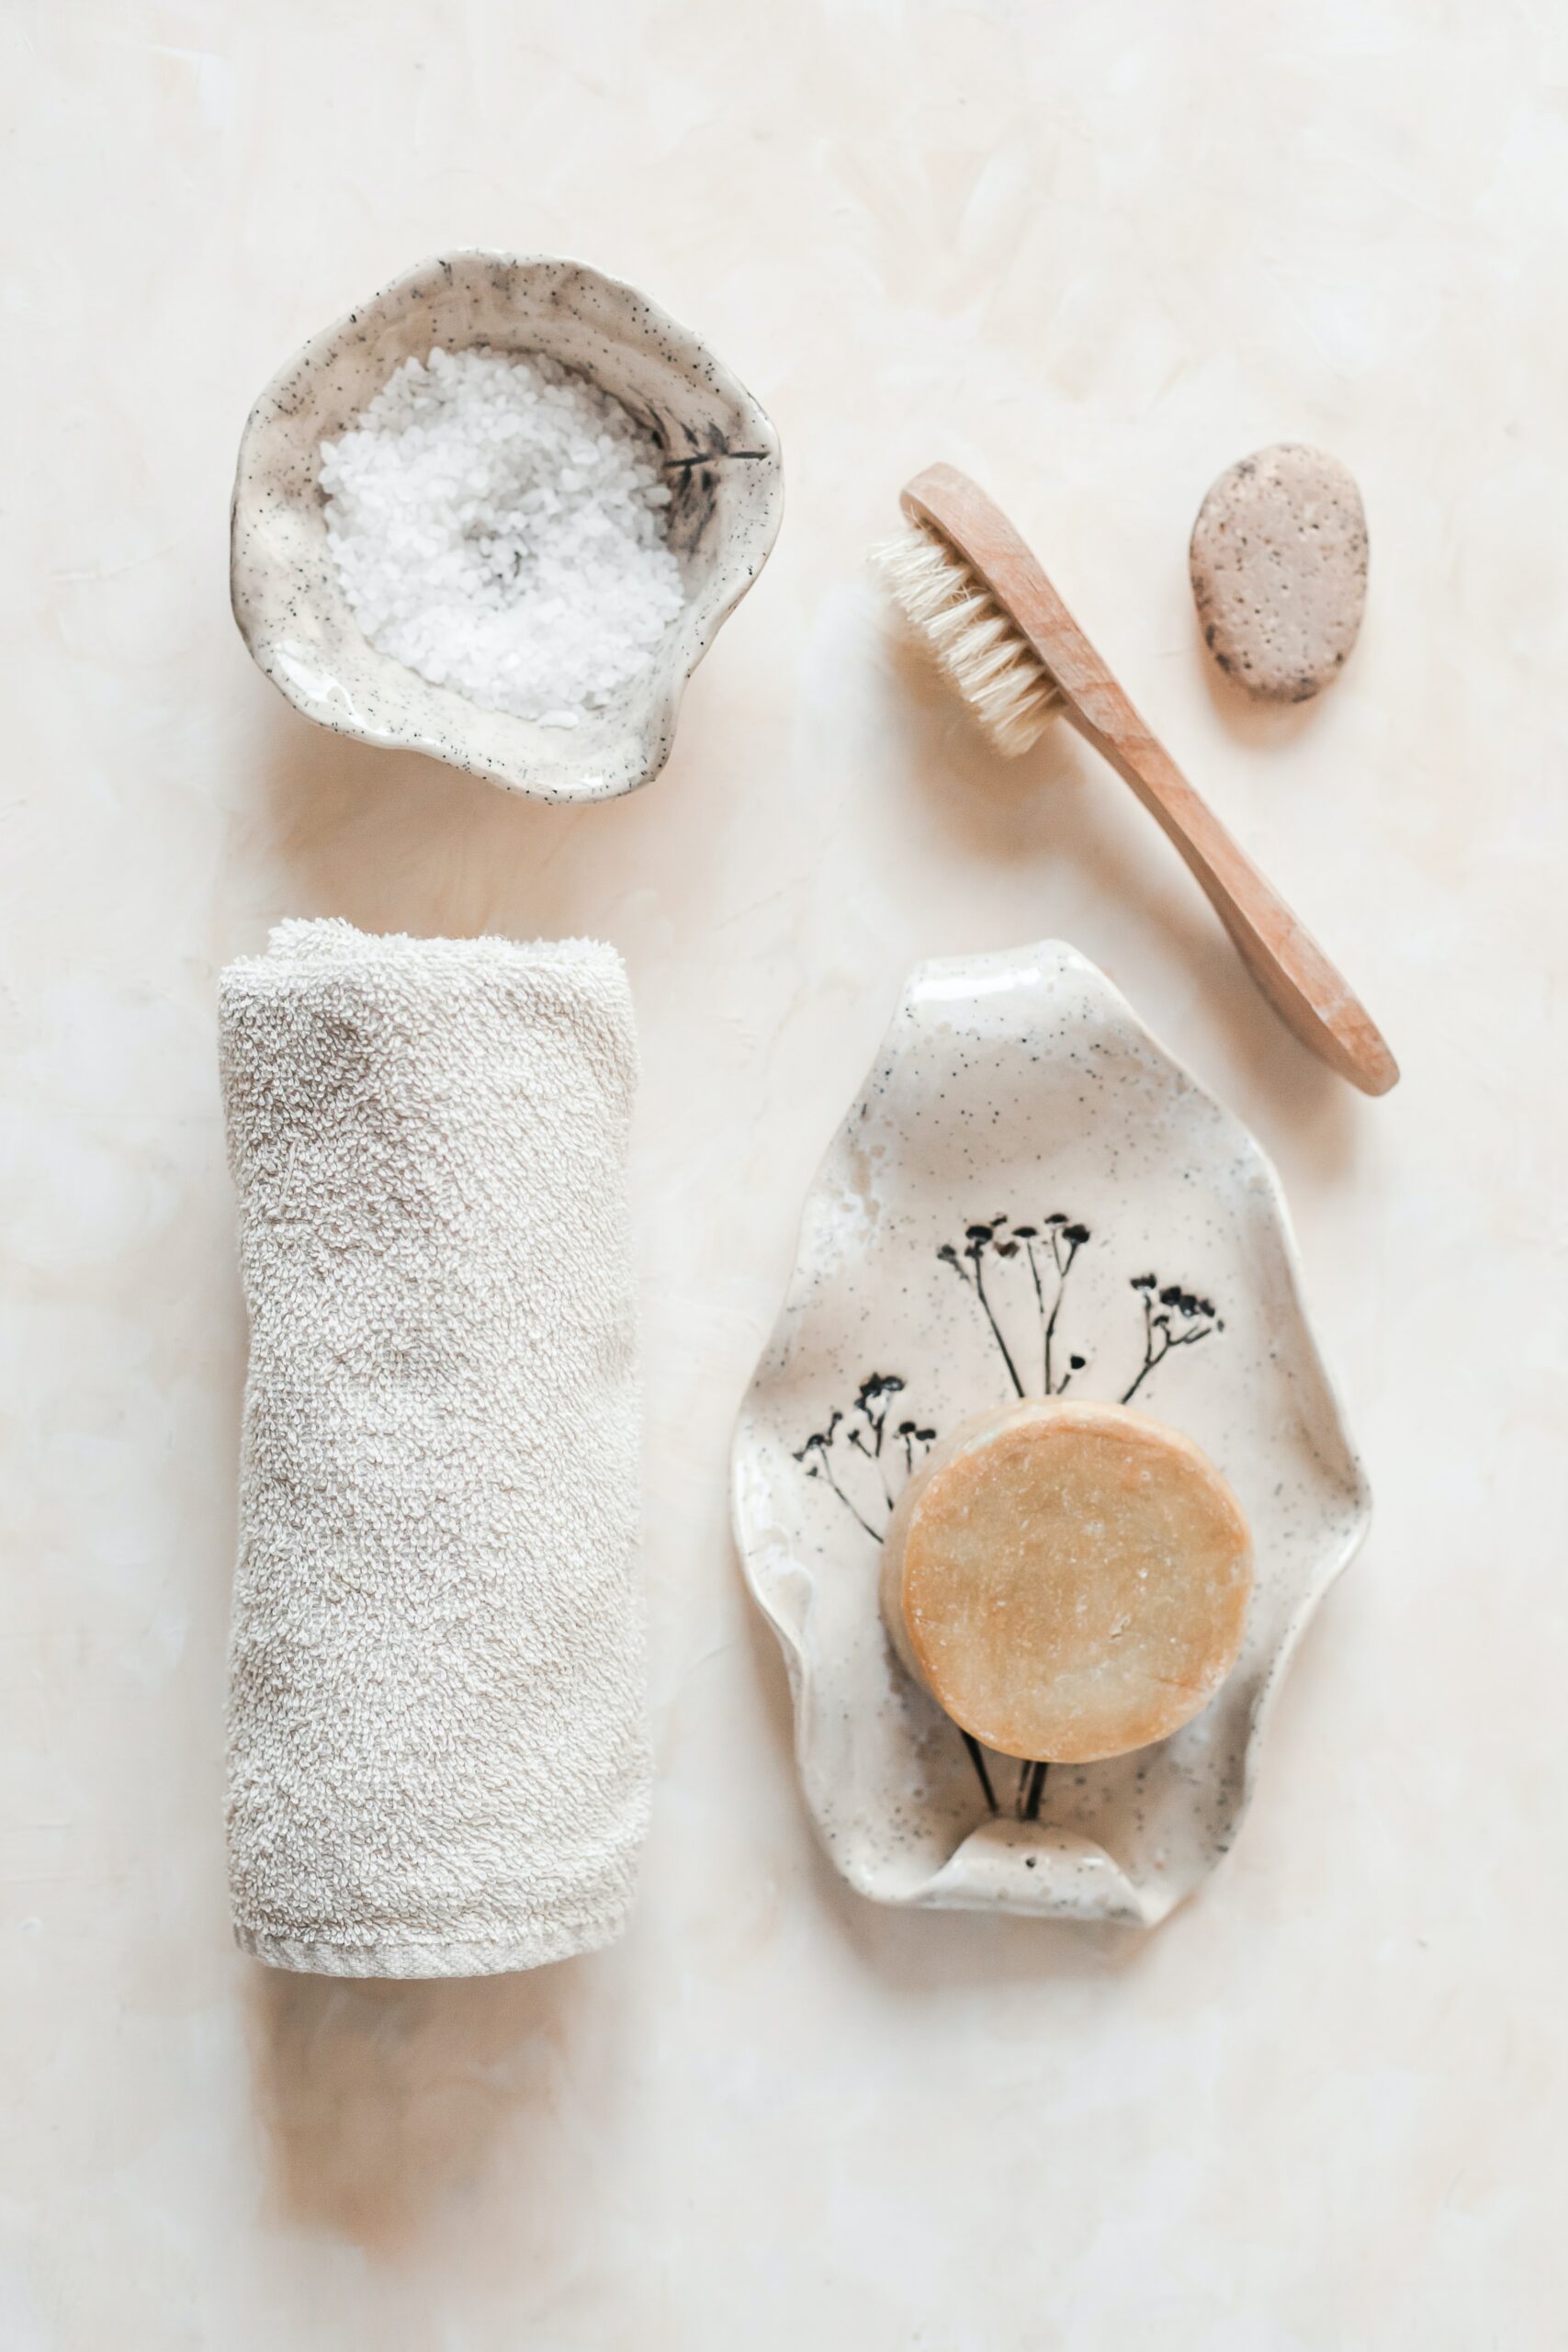 outils pour faire ses propres cosmétiques : brosse, savon, serviette...